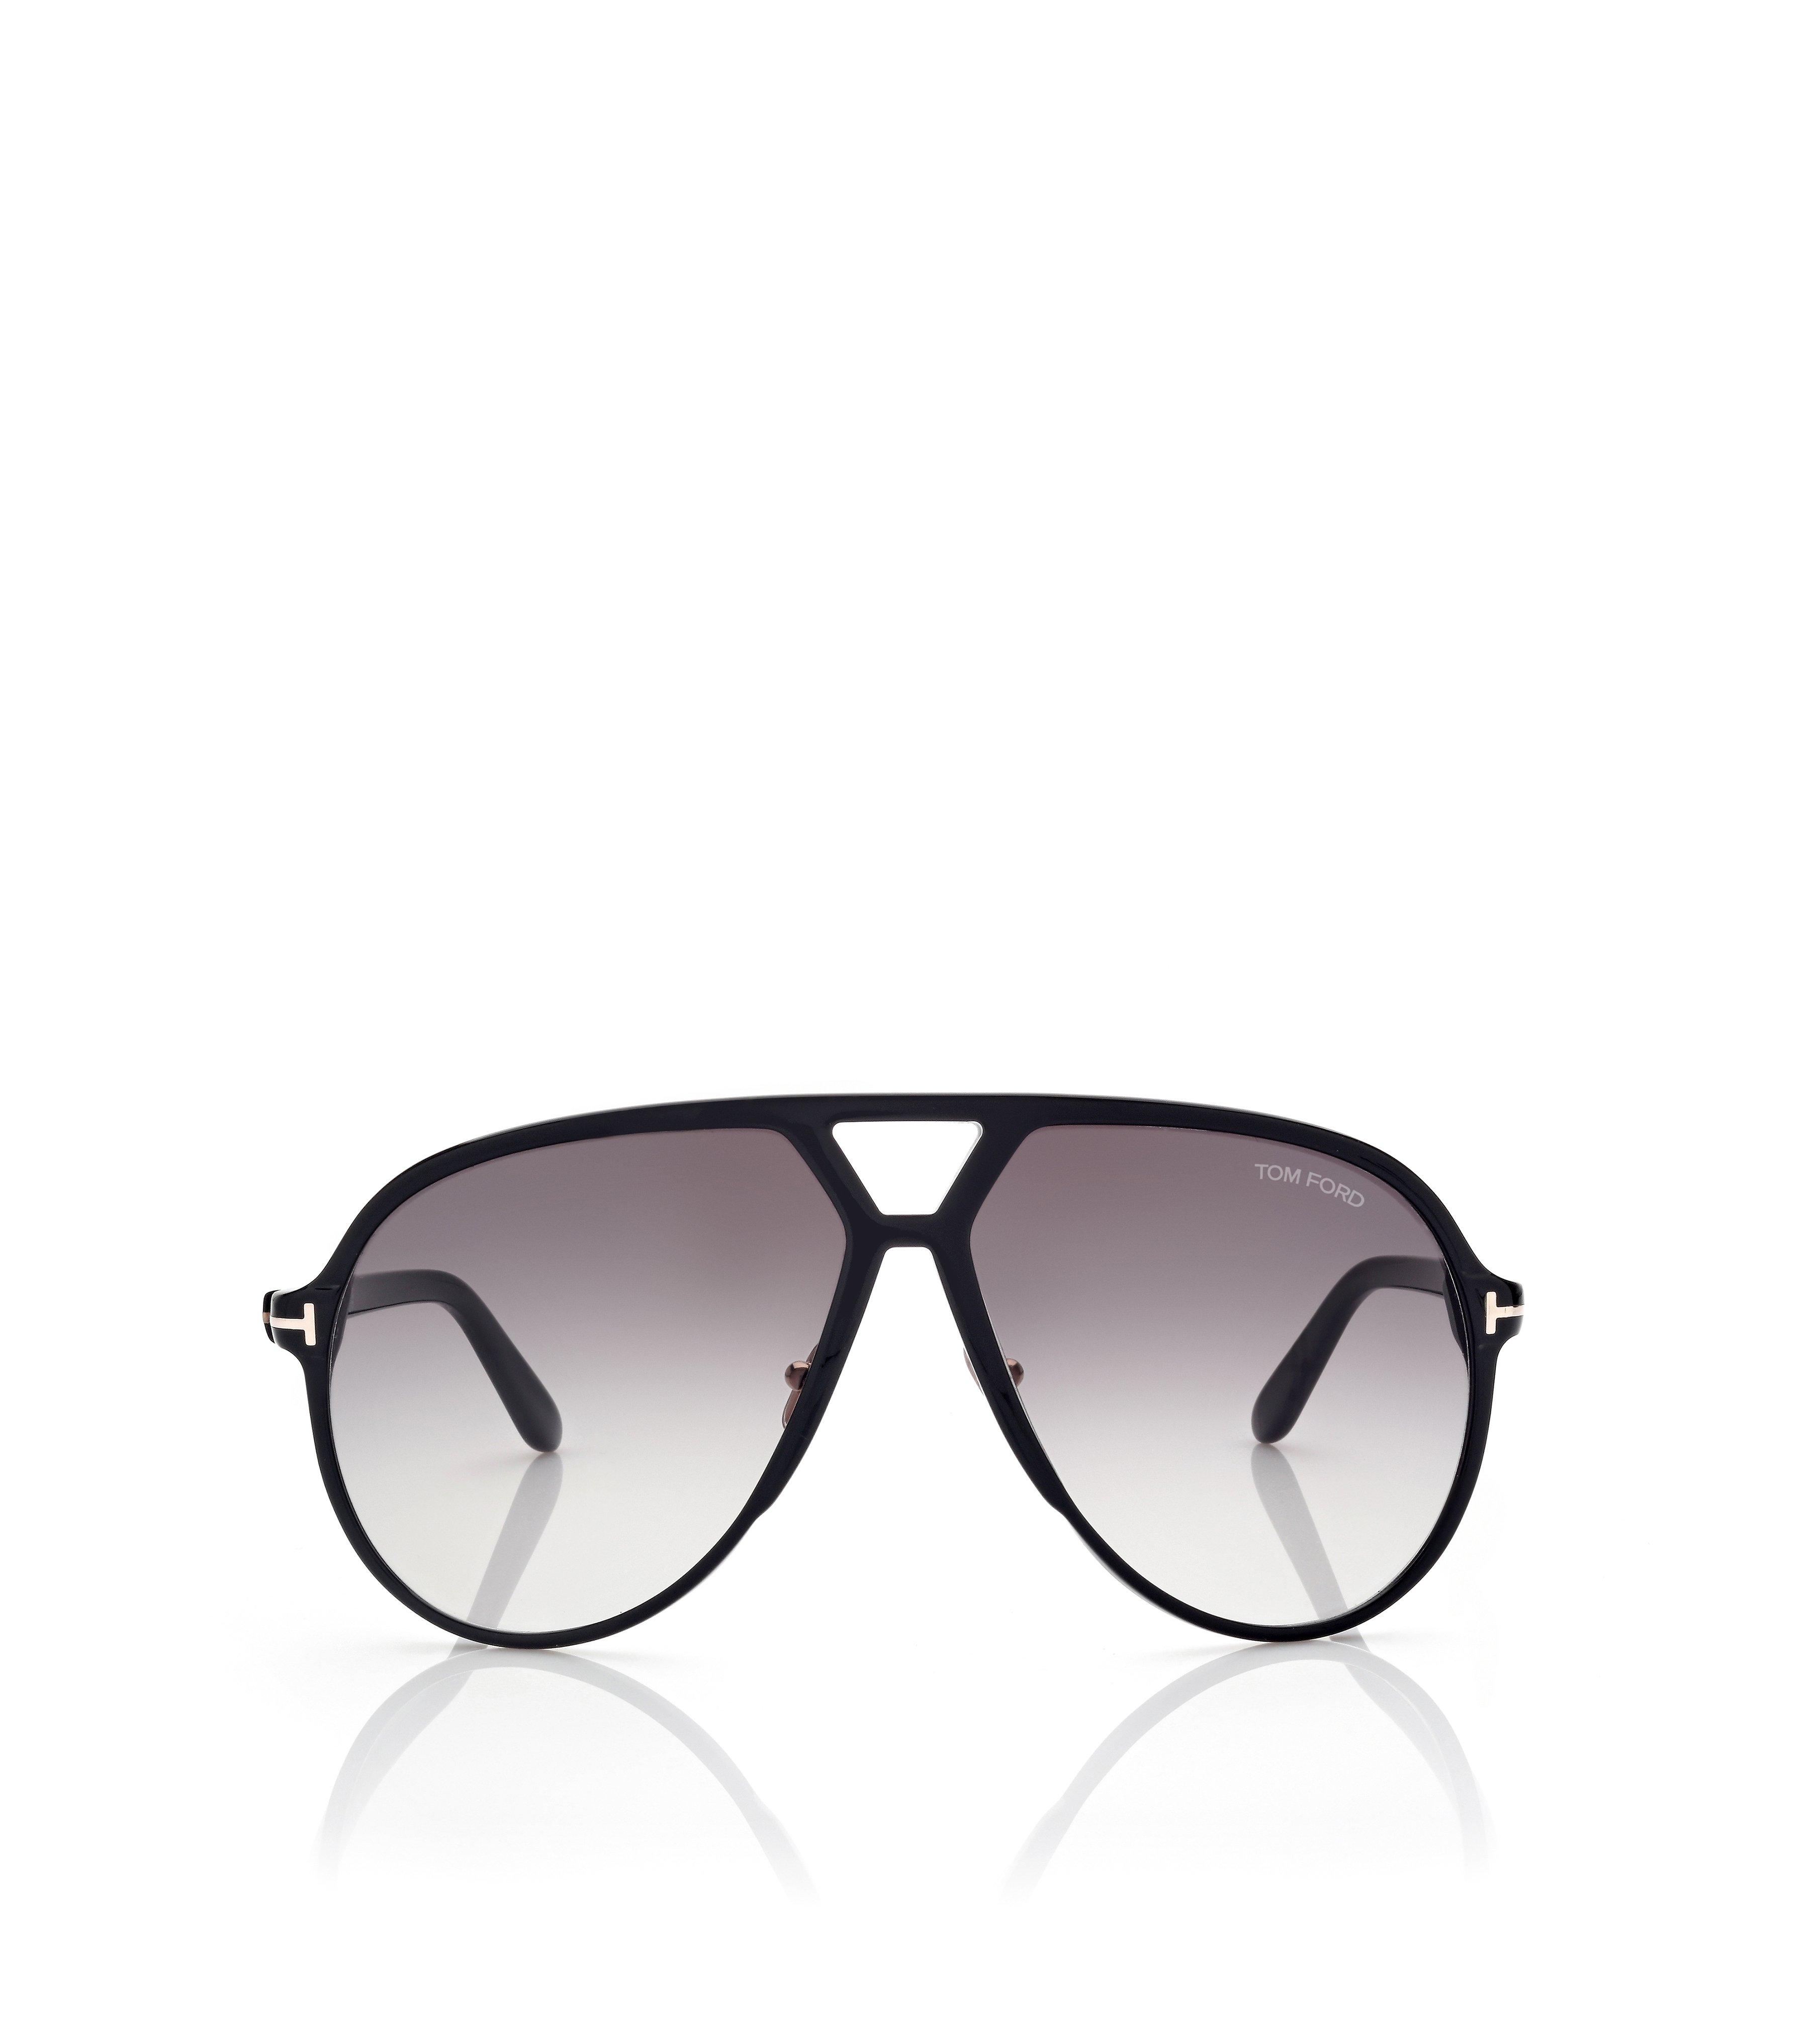 Tom Ford Men's Sunglasses Gerard-02 Black Acetate Brown Lens